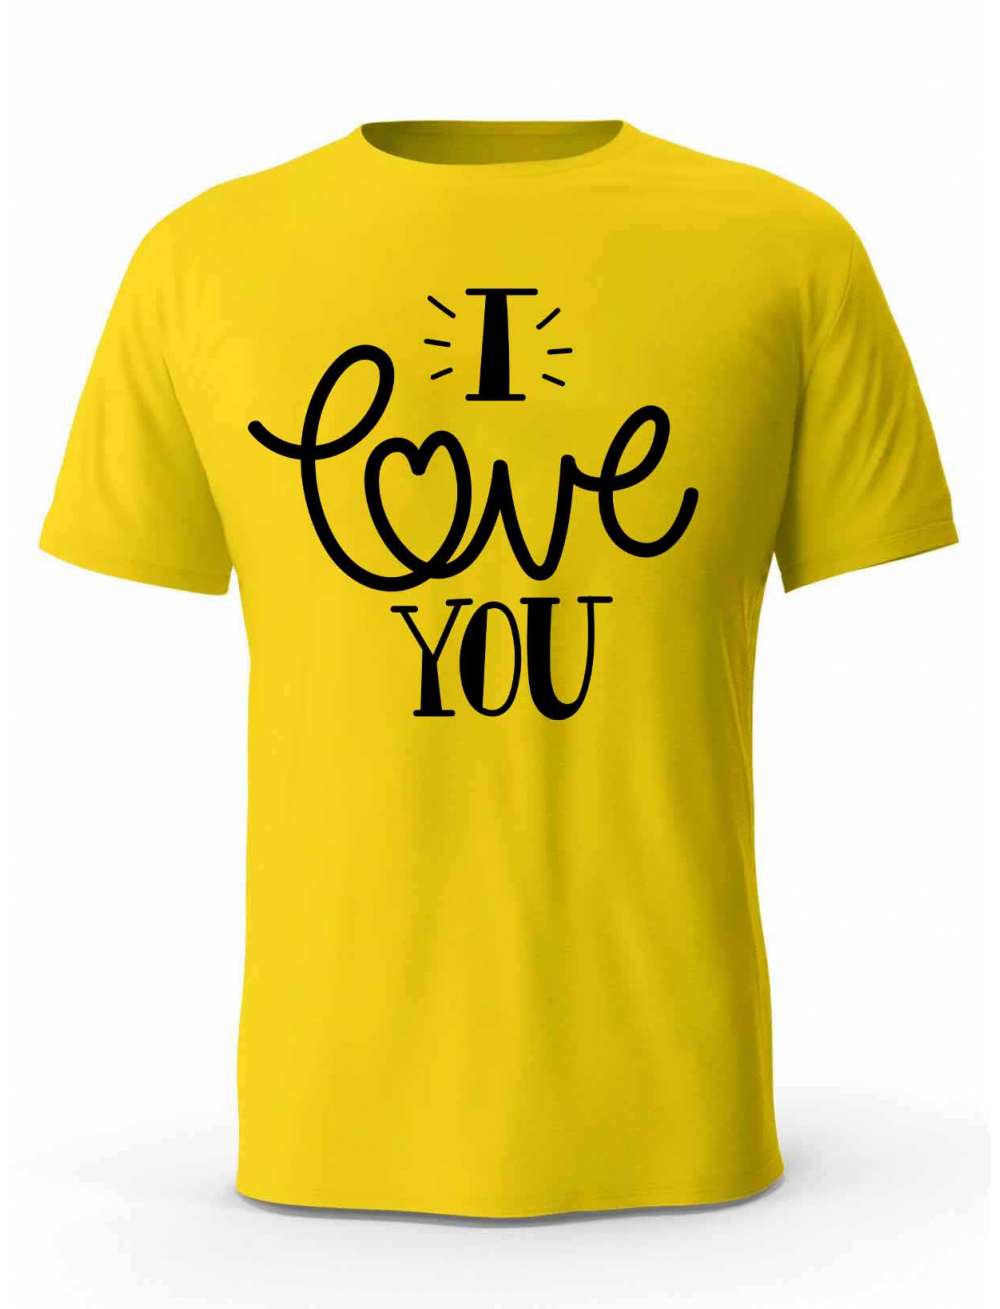 Koszulka Męska, I Love You, Prezent Dla Mężczyzny